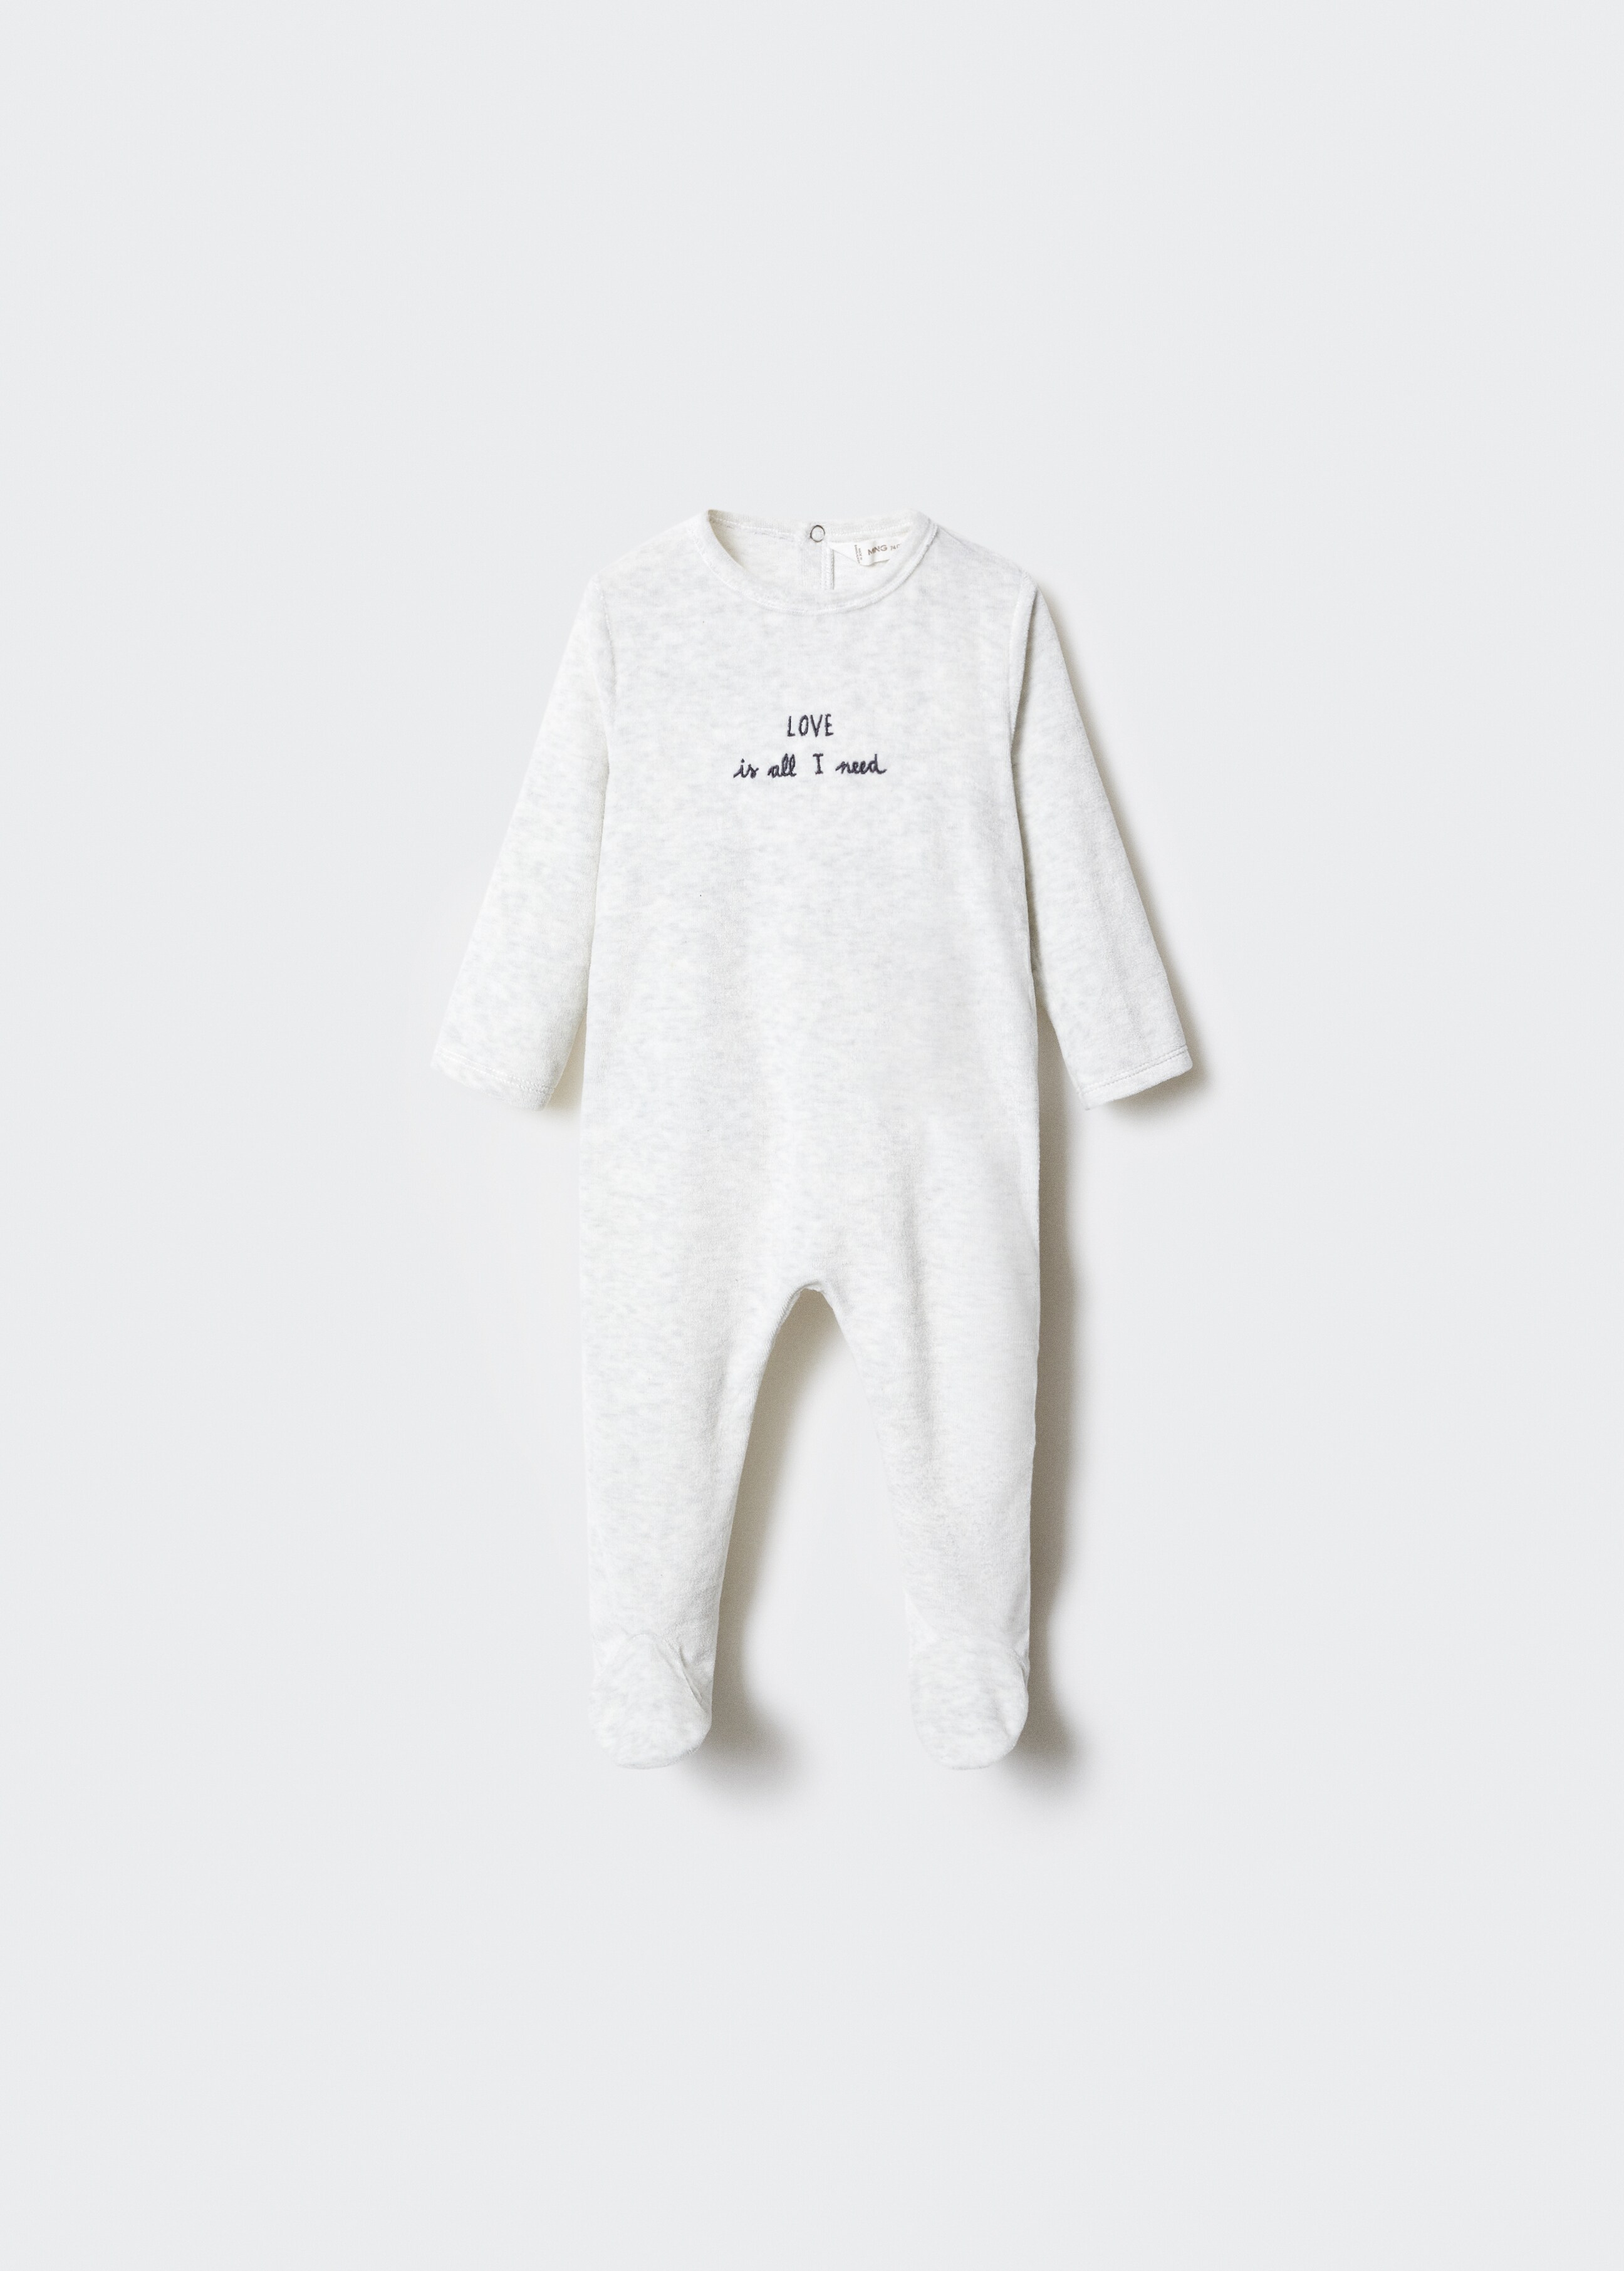 Pijama body algodón - Artículo sin modelo